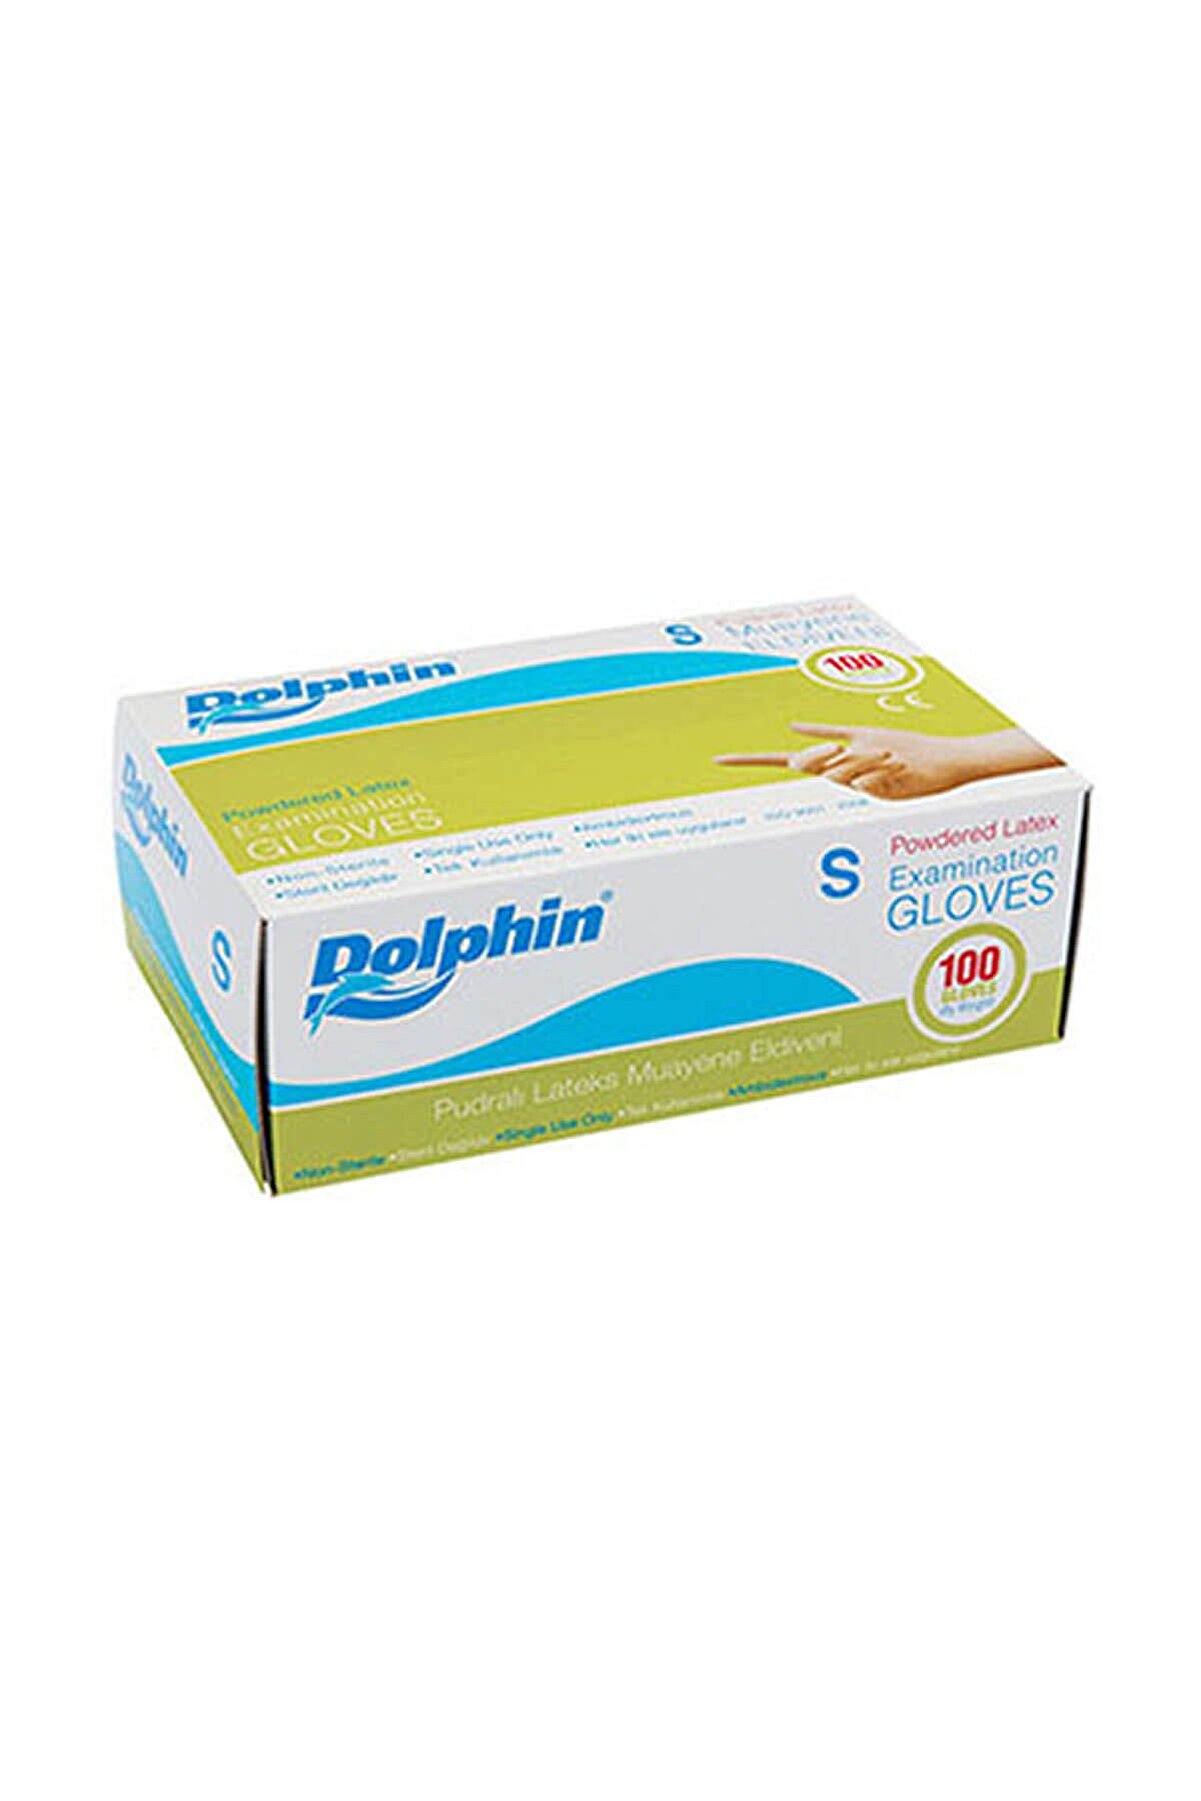 Dolphin Tek Kullanımlık Pudralı Latex Muayene Eldiveni 100'lü Paket - Small ( Küçük Boy )